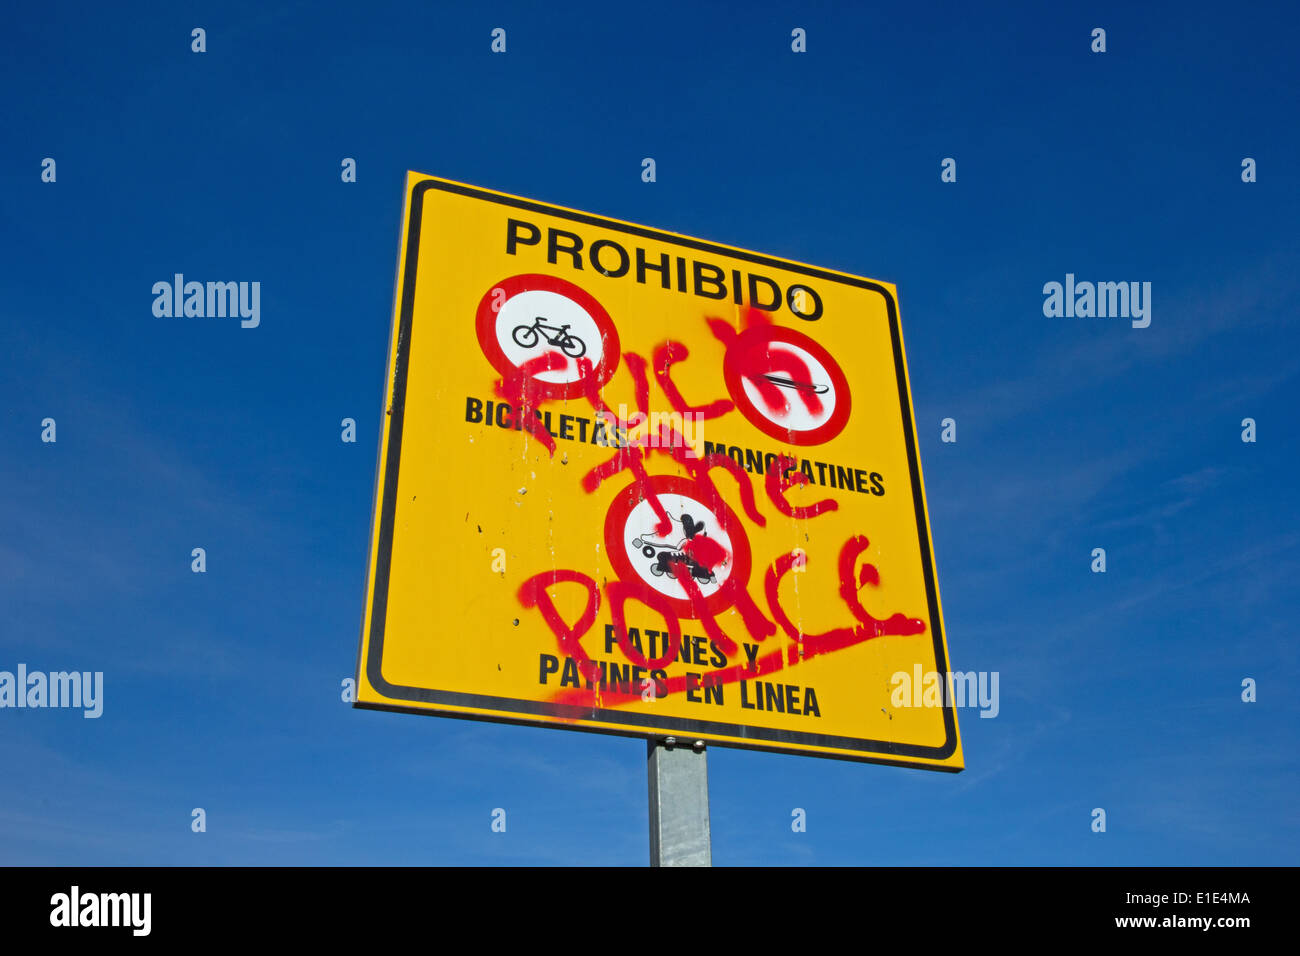 Firmar prohibir el ciclismo, skateboarding y patinaje en línea, pintarrajeada con policías anti graffiti, España Foto de stock